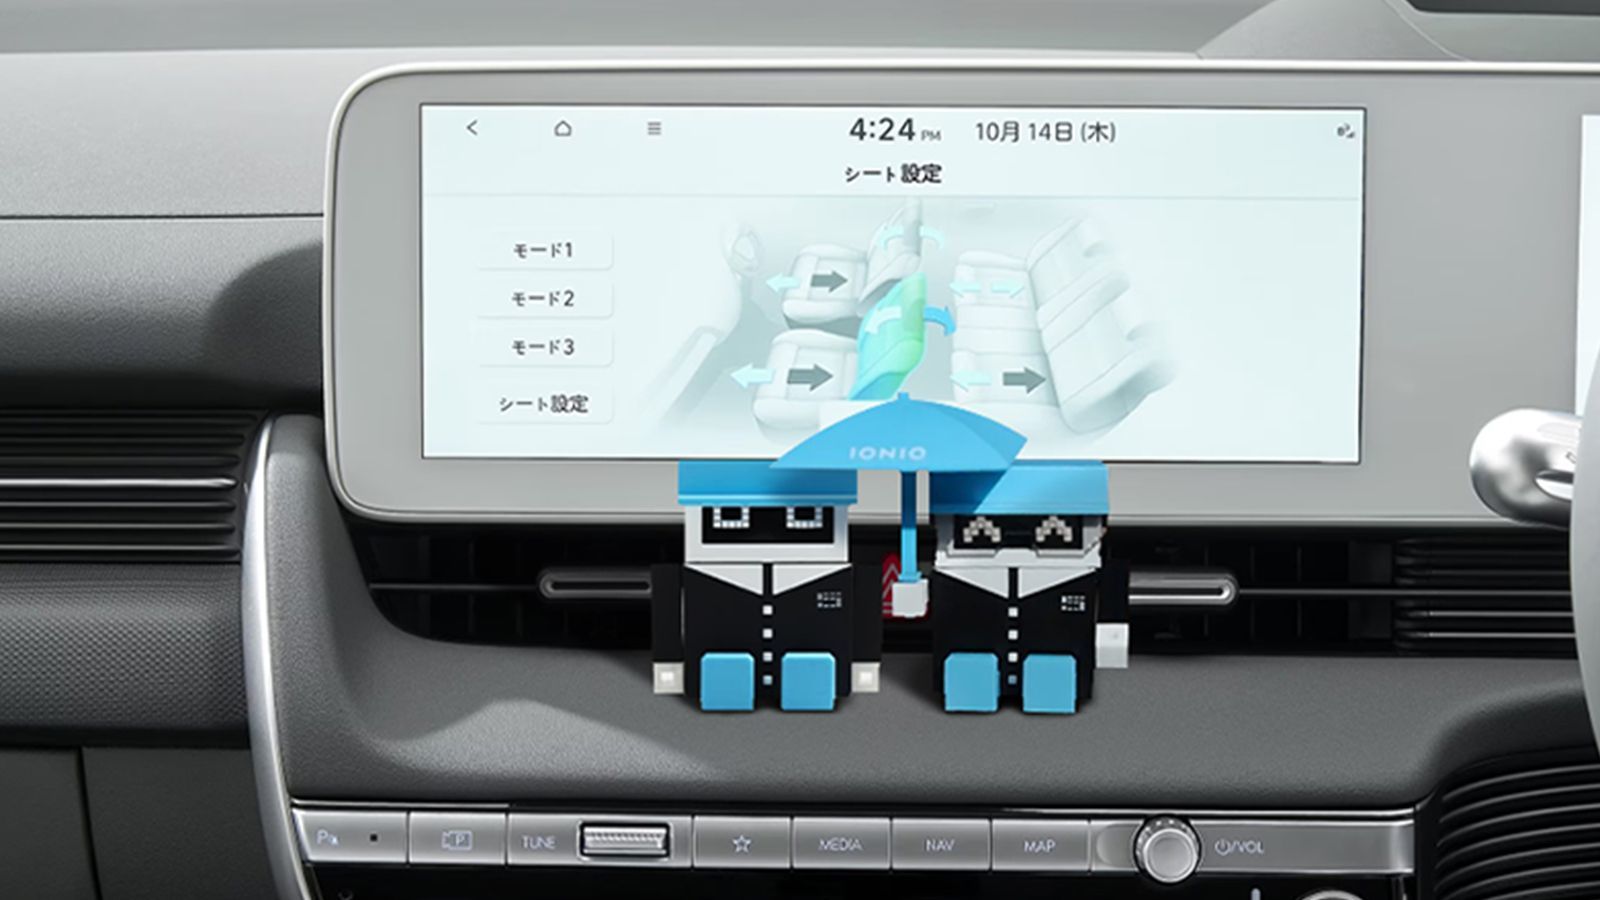 IONIQ 5 (アイオニック 5) 電気自動車 EV モニター - Hyundai Mobility Japan (ヒョンデモビリティジャパン)